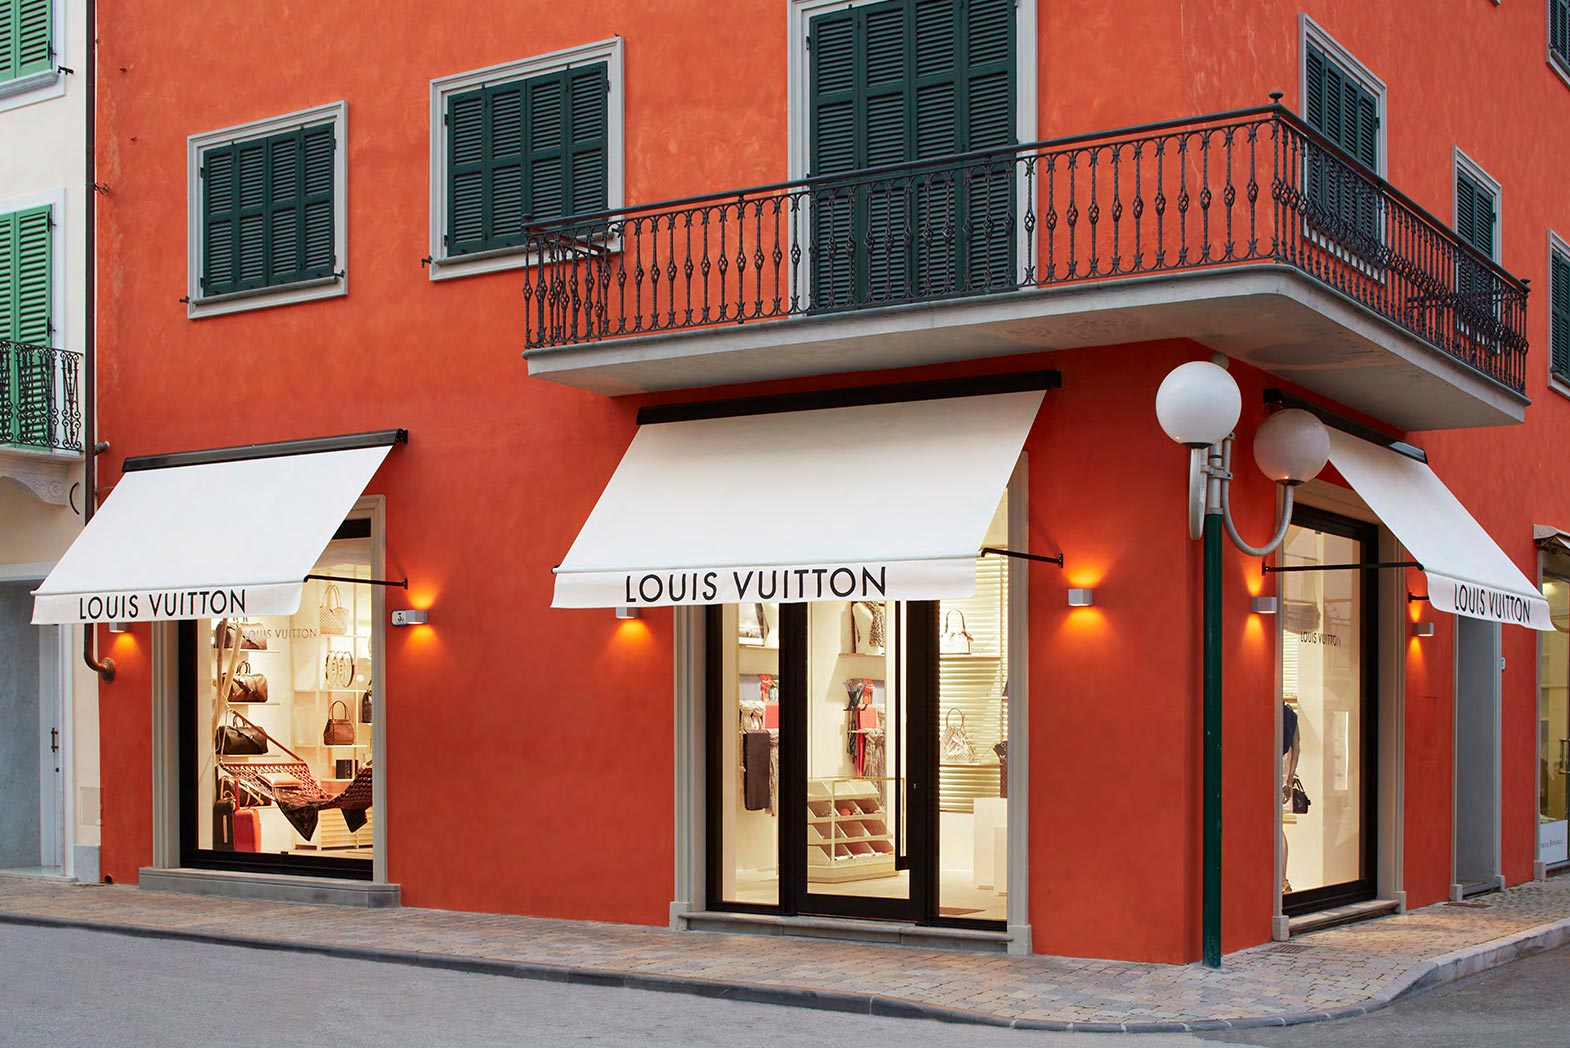 Louis Vuitton Forte Dei Marmi store, Italy